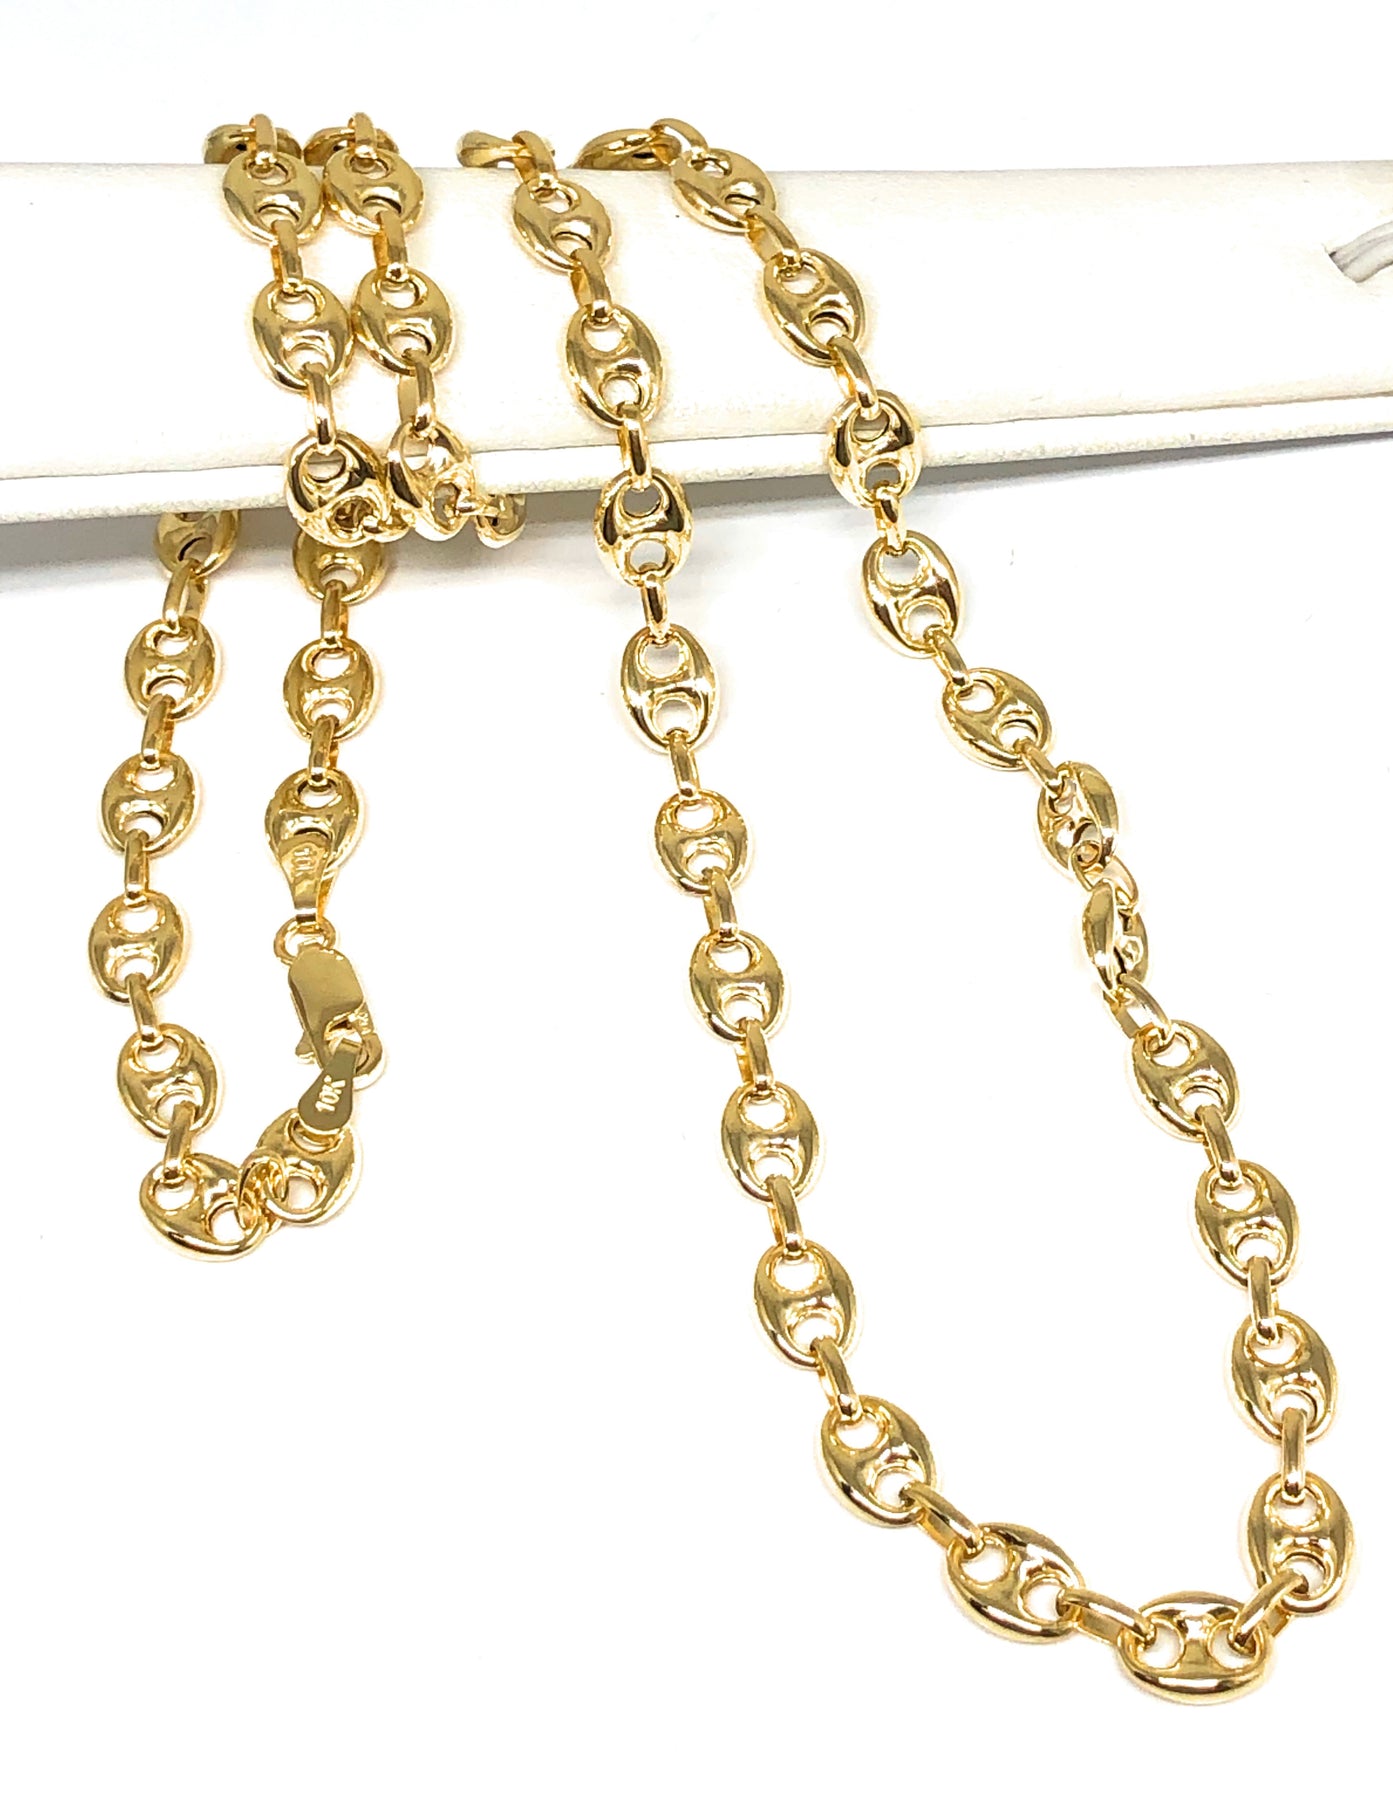 10k Solid Gold "Gucci" Cadena de enlace 16-24 2MM – Fran & Co Jewelry